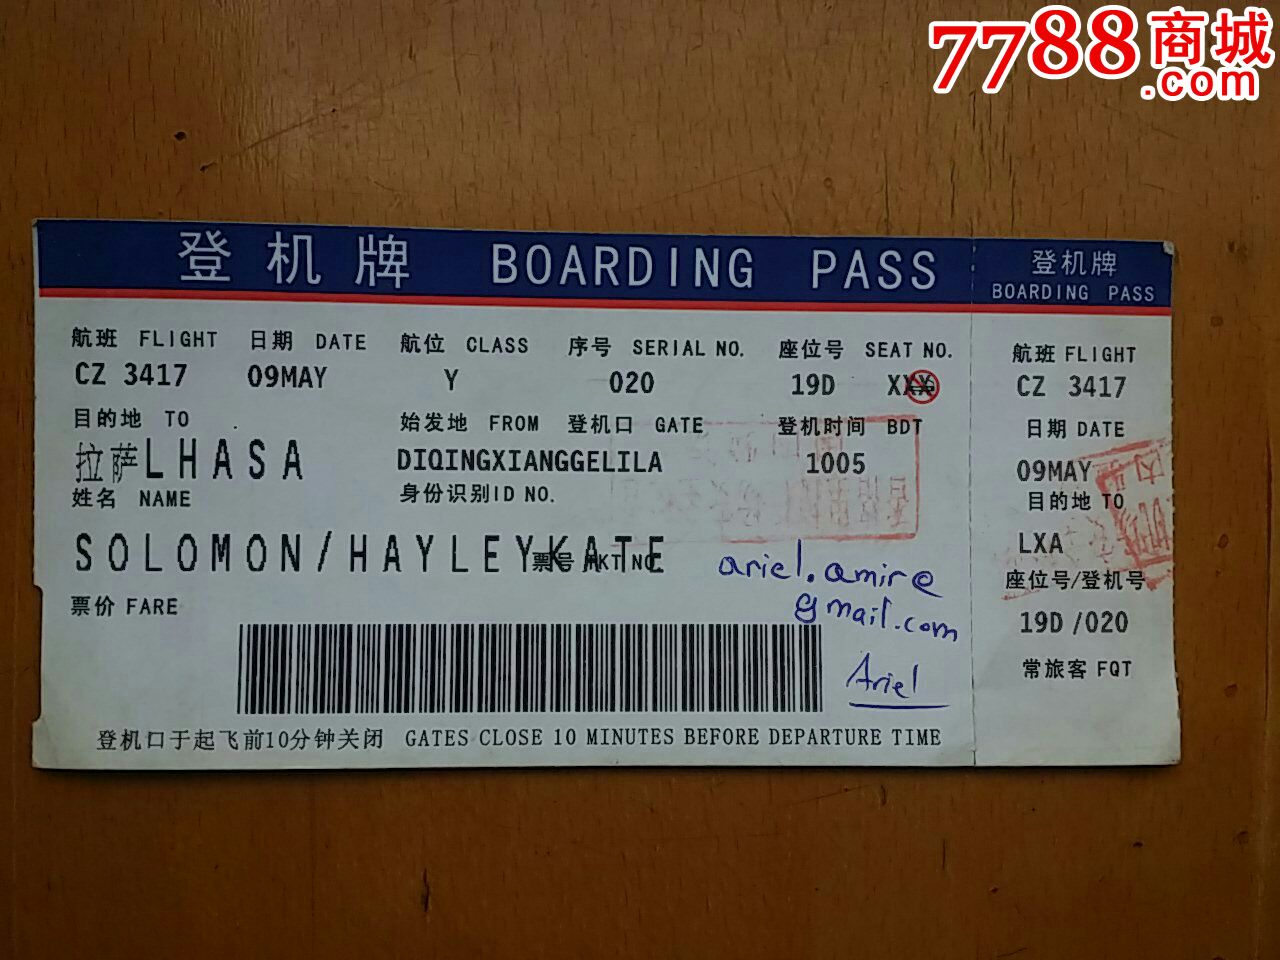 北京到西安机票图片 北京到西安机票图片大全_社会热点图片_非主流图片站